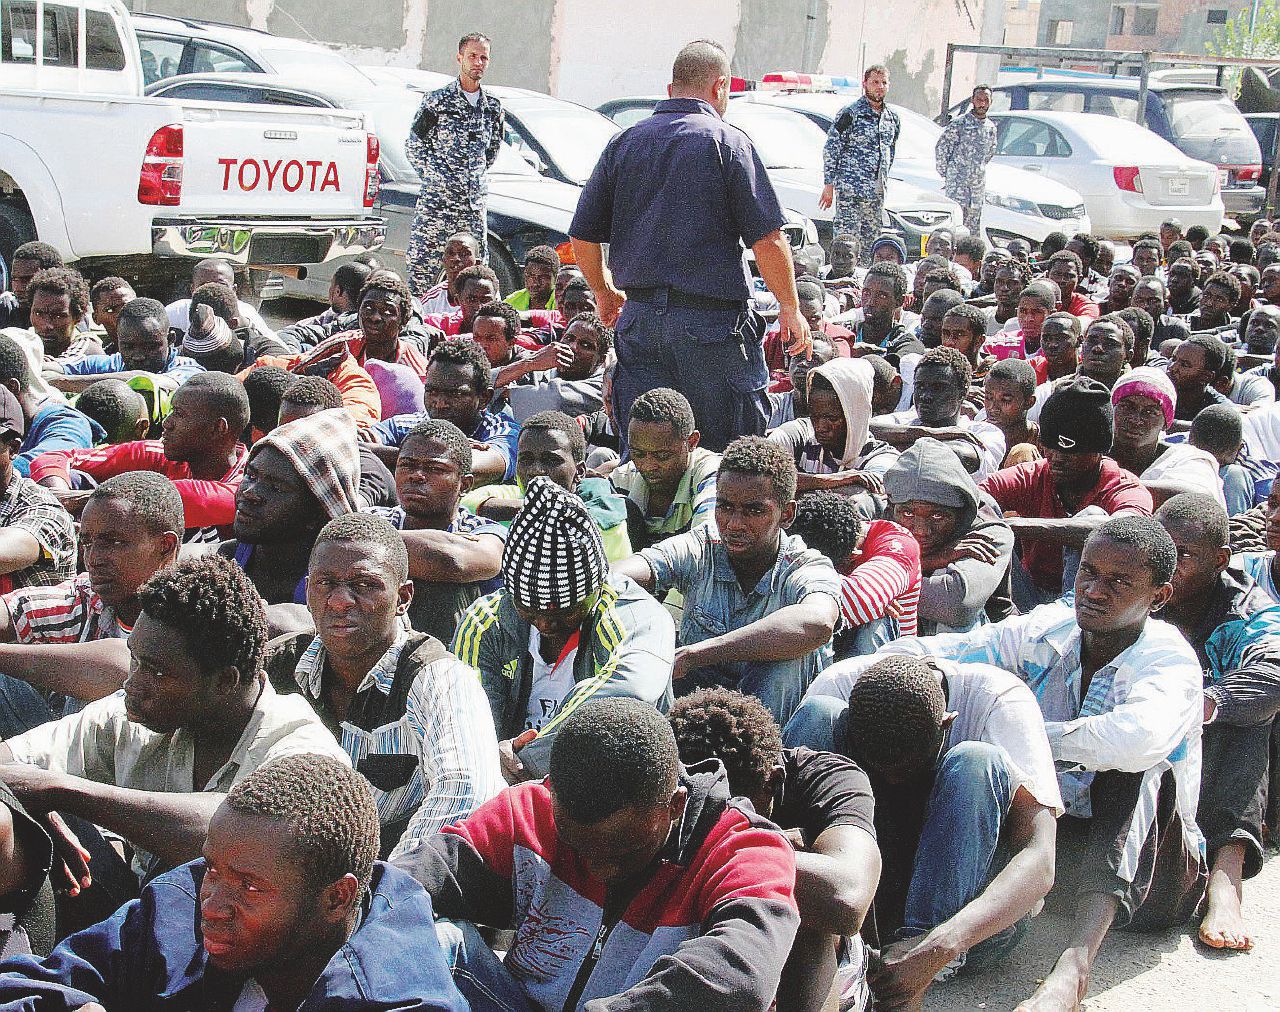 In Edicola sul Fatto Quotidiano del 22 luglio: Esclusivo: “I migranti morti li lasciamo in mare”